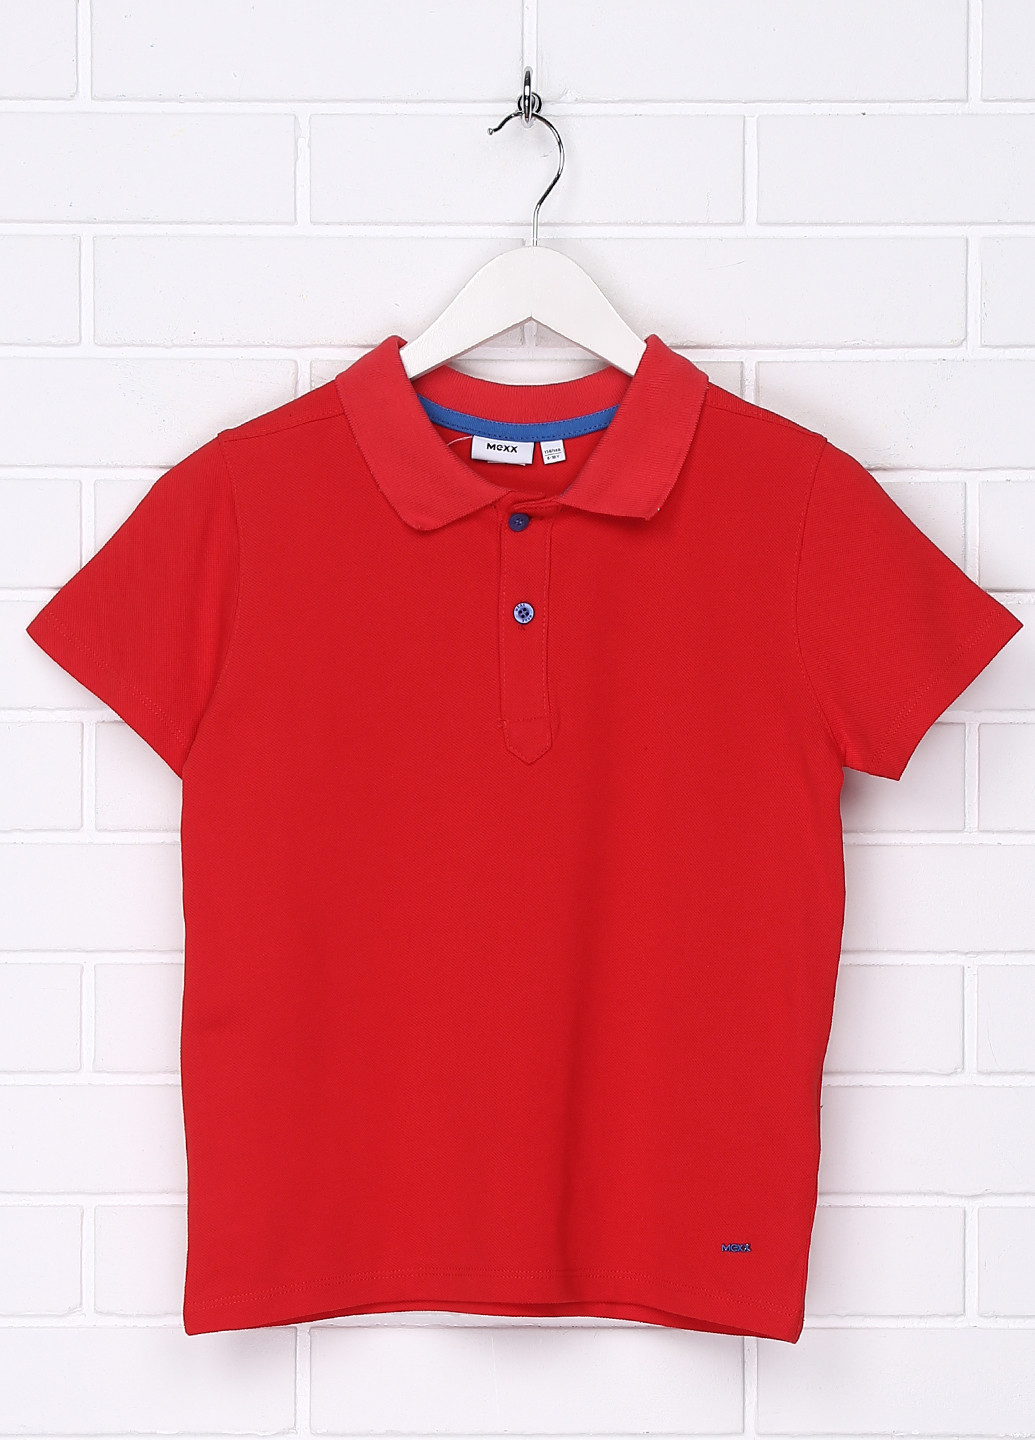 Красная детская футболка-поло для мальчика Мехх однотонная